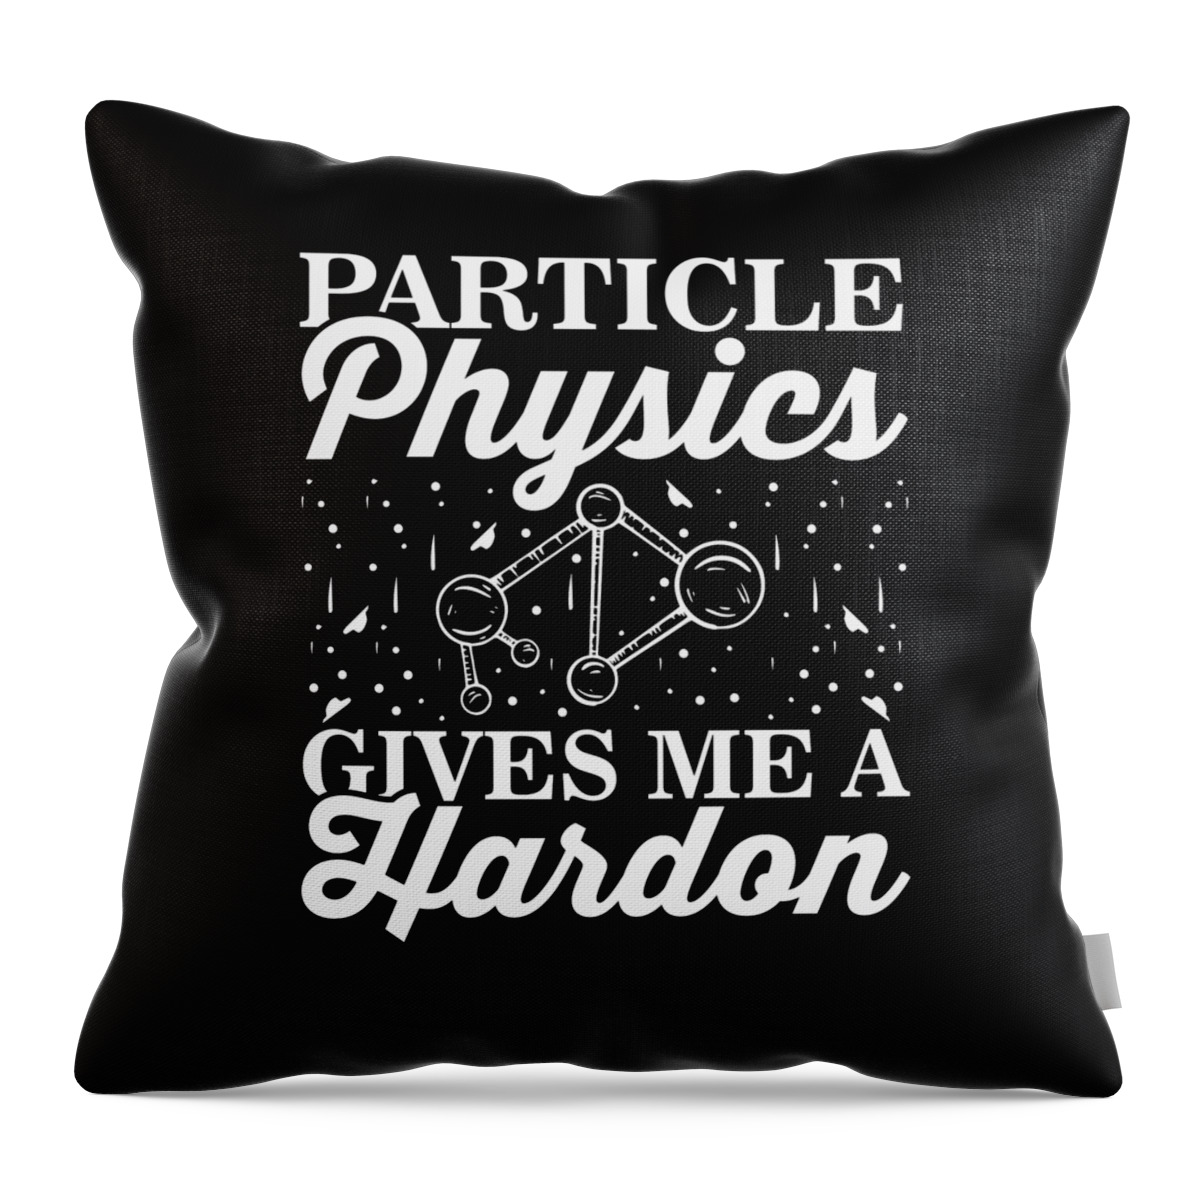 Physicist Throw Pillow featuring the digital art Physics Physicist #5 by Mercoat UG Haftungsbeschraenkt